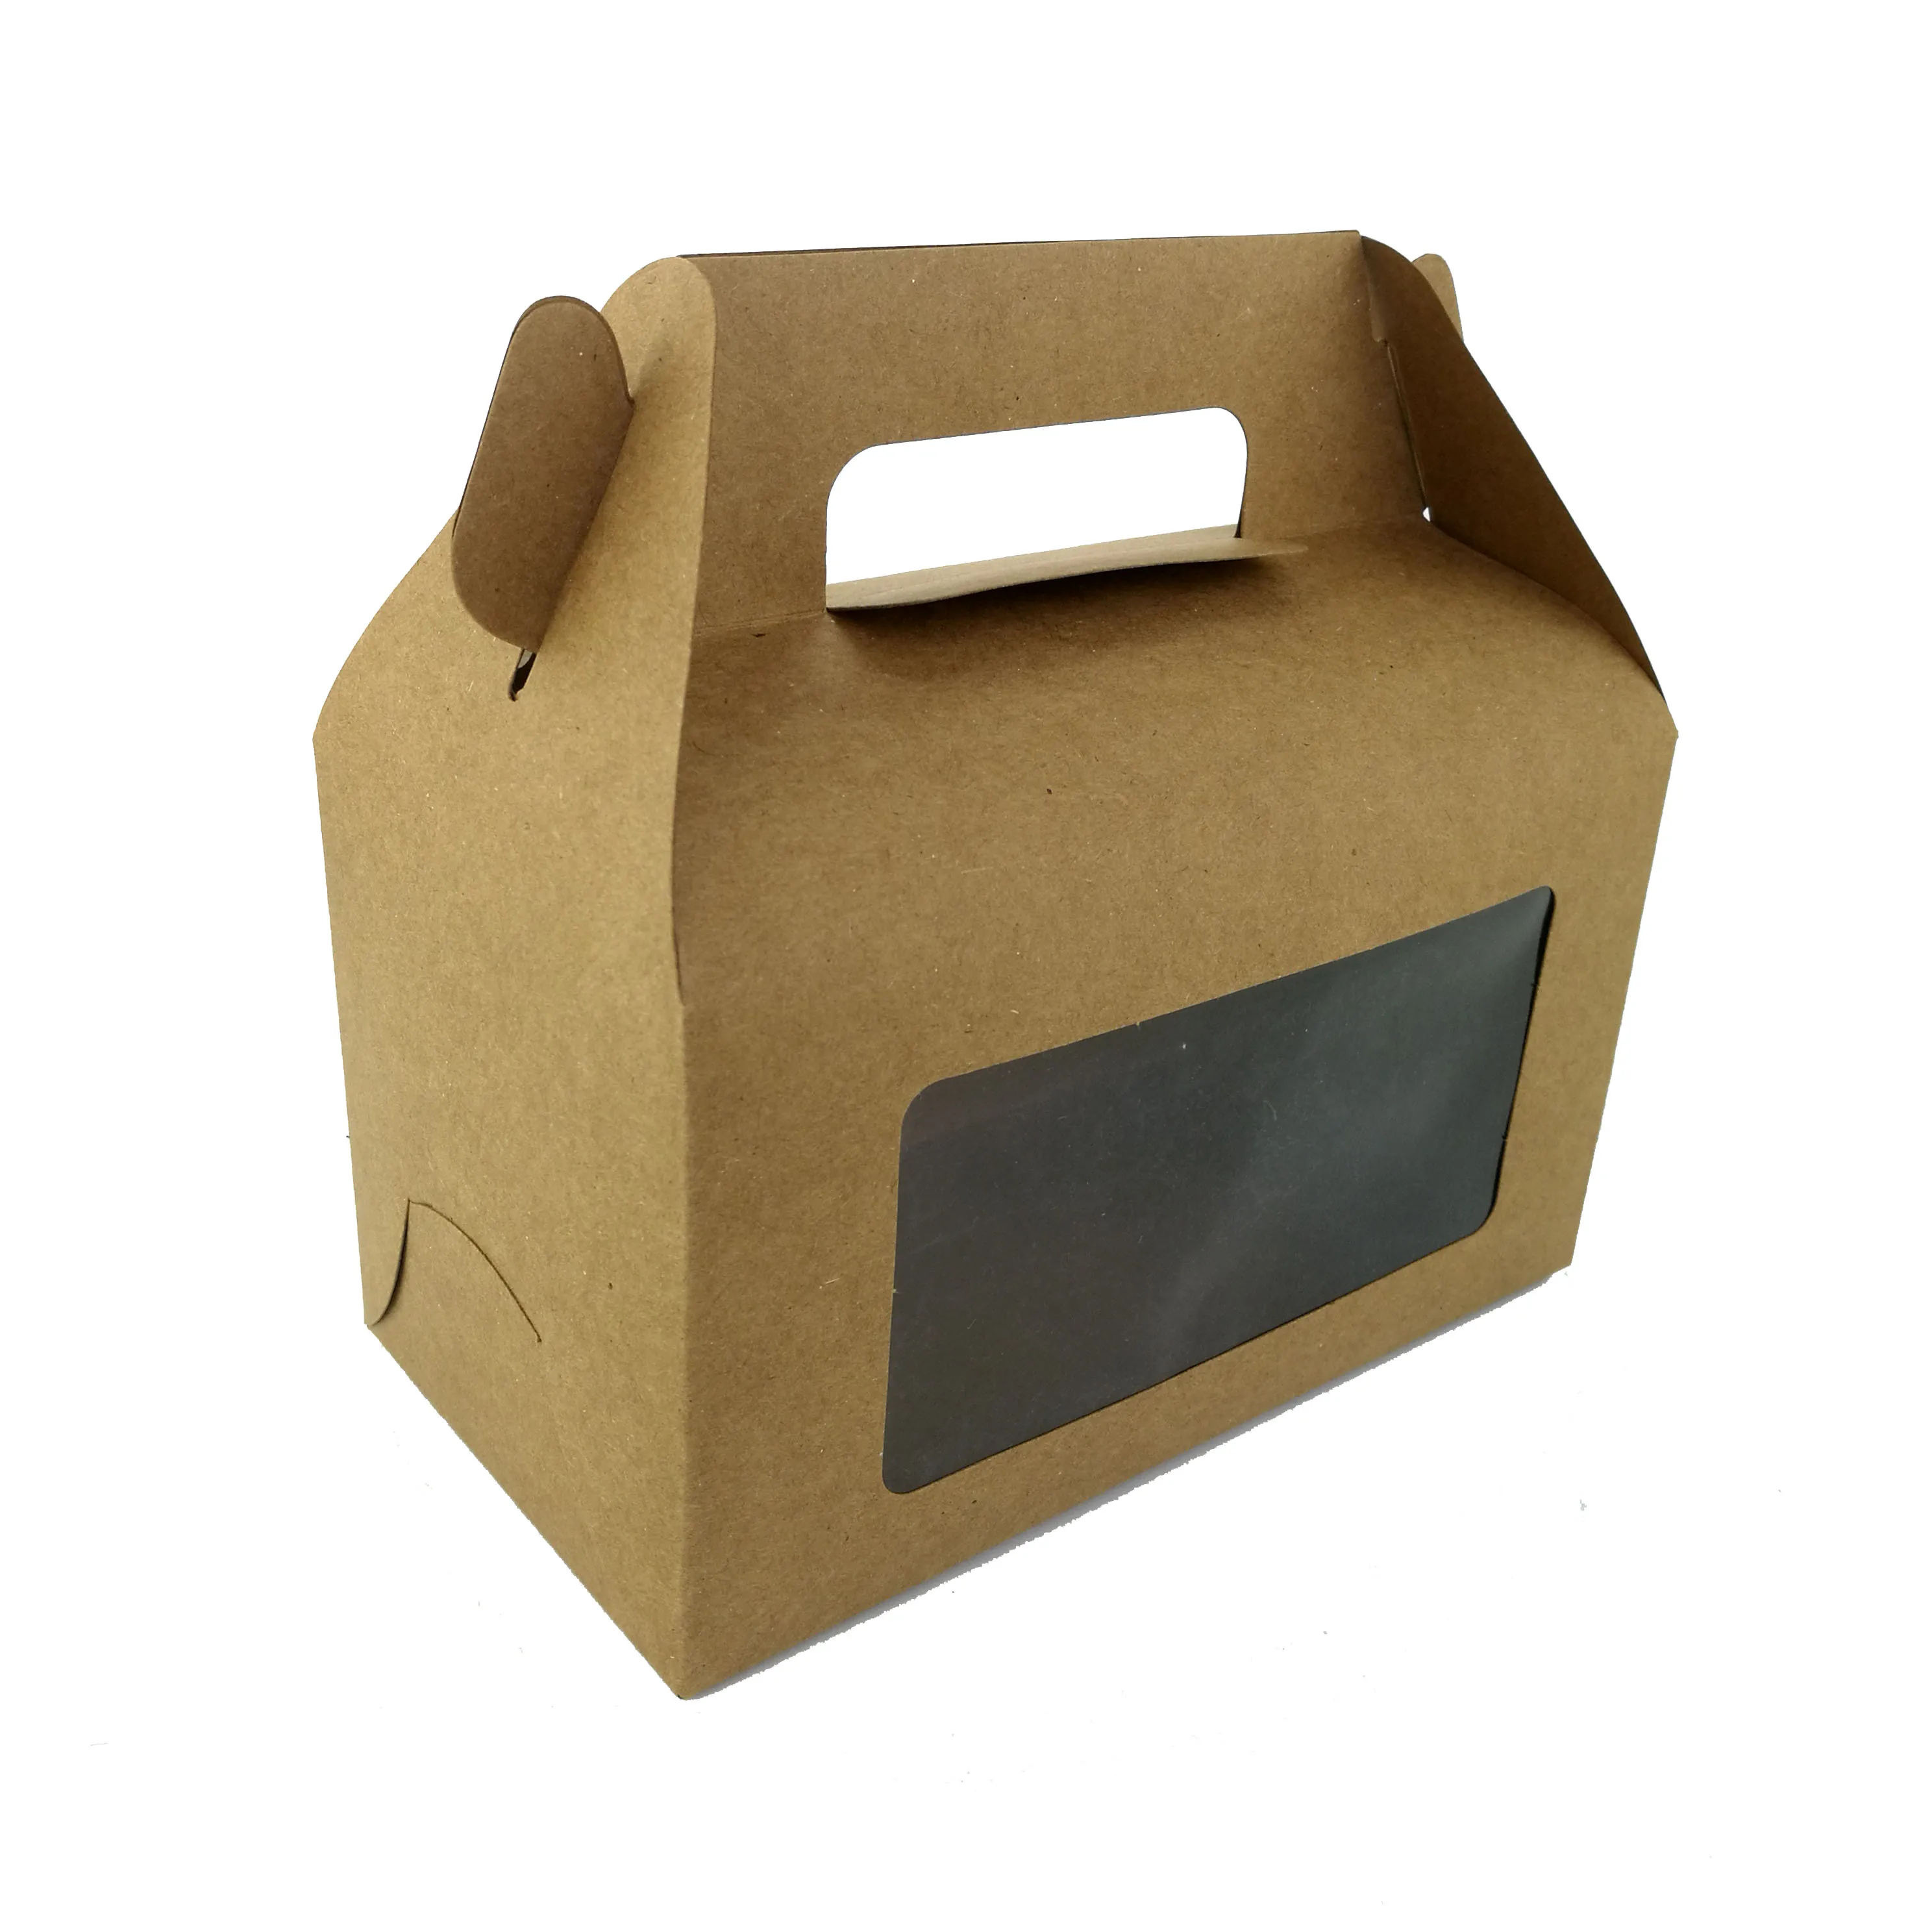 产品编号: 花式设计牛皮纸蛋糕包装盒与句柄 材料: 食品级牛皮纸袋